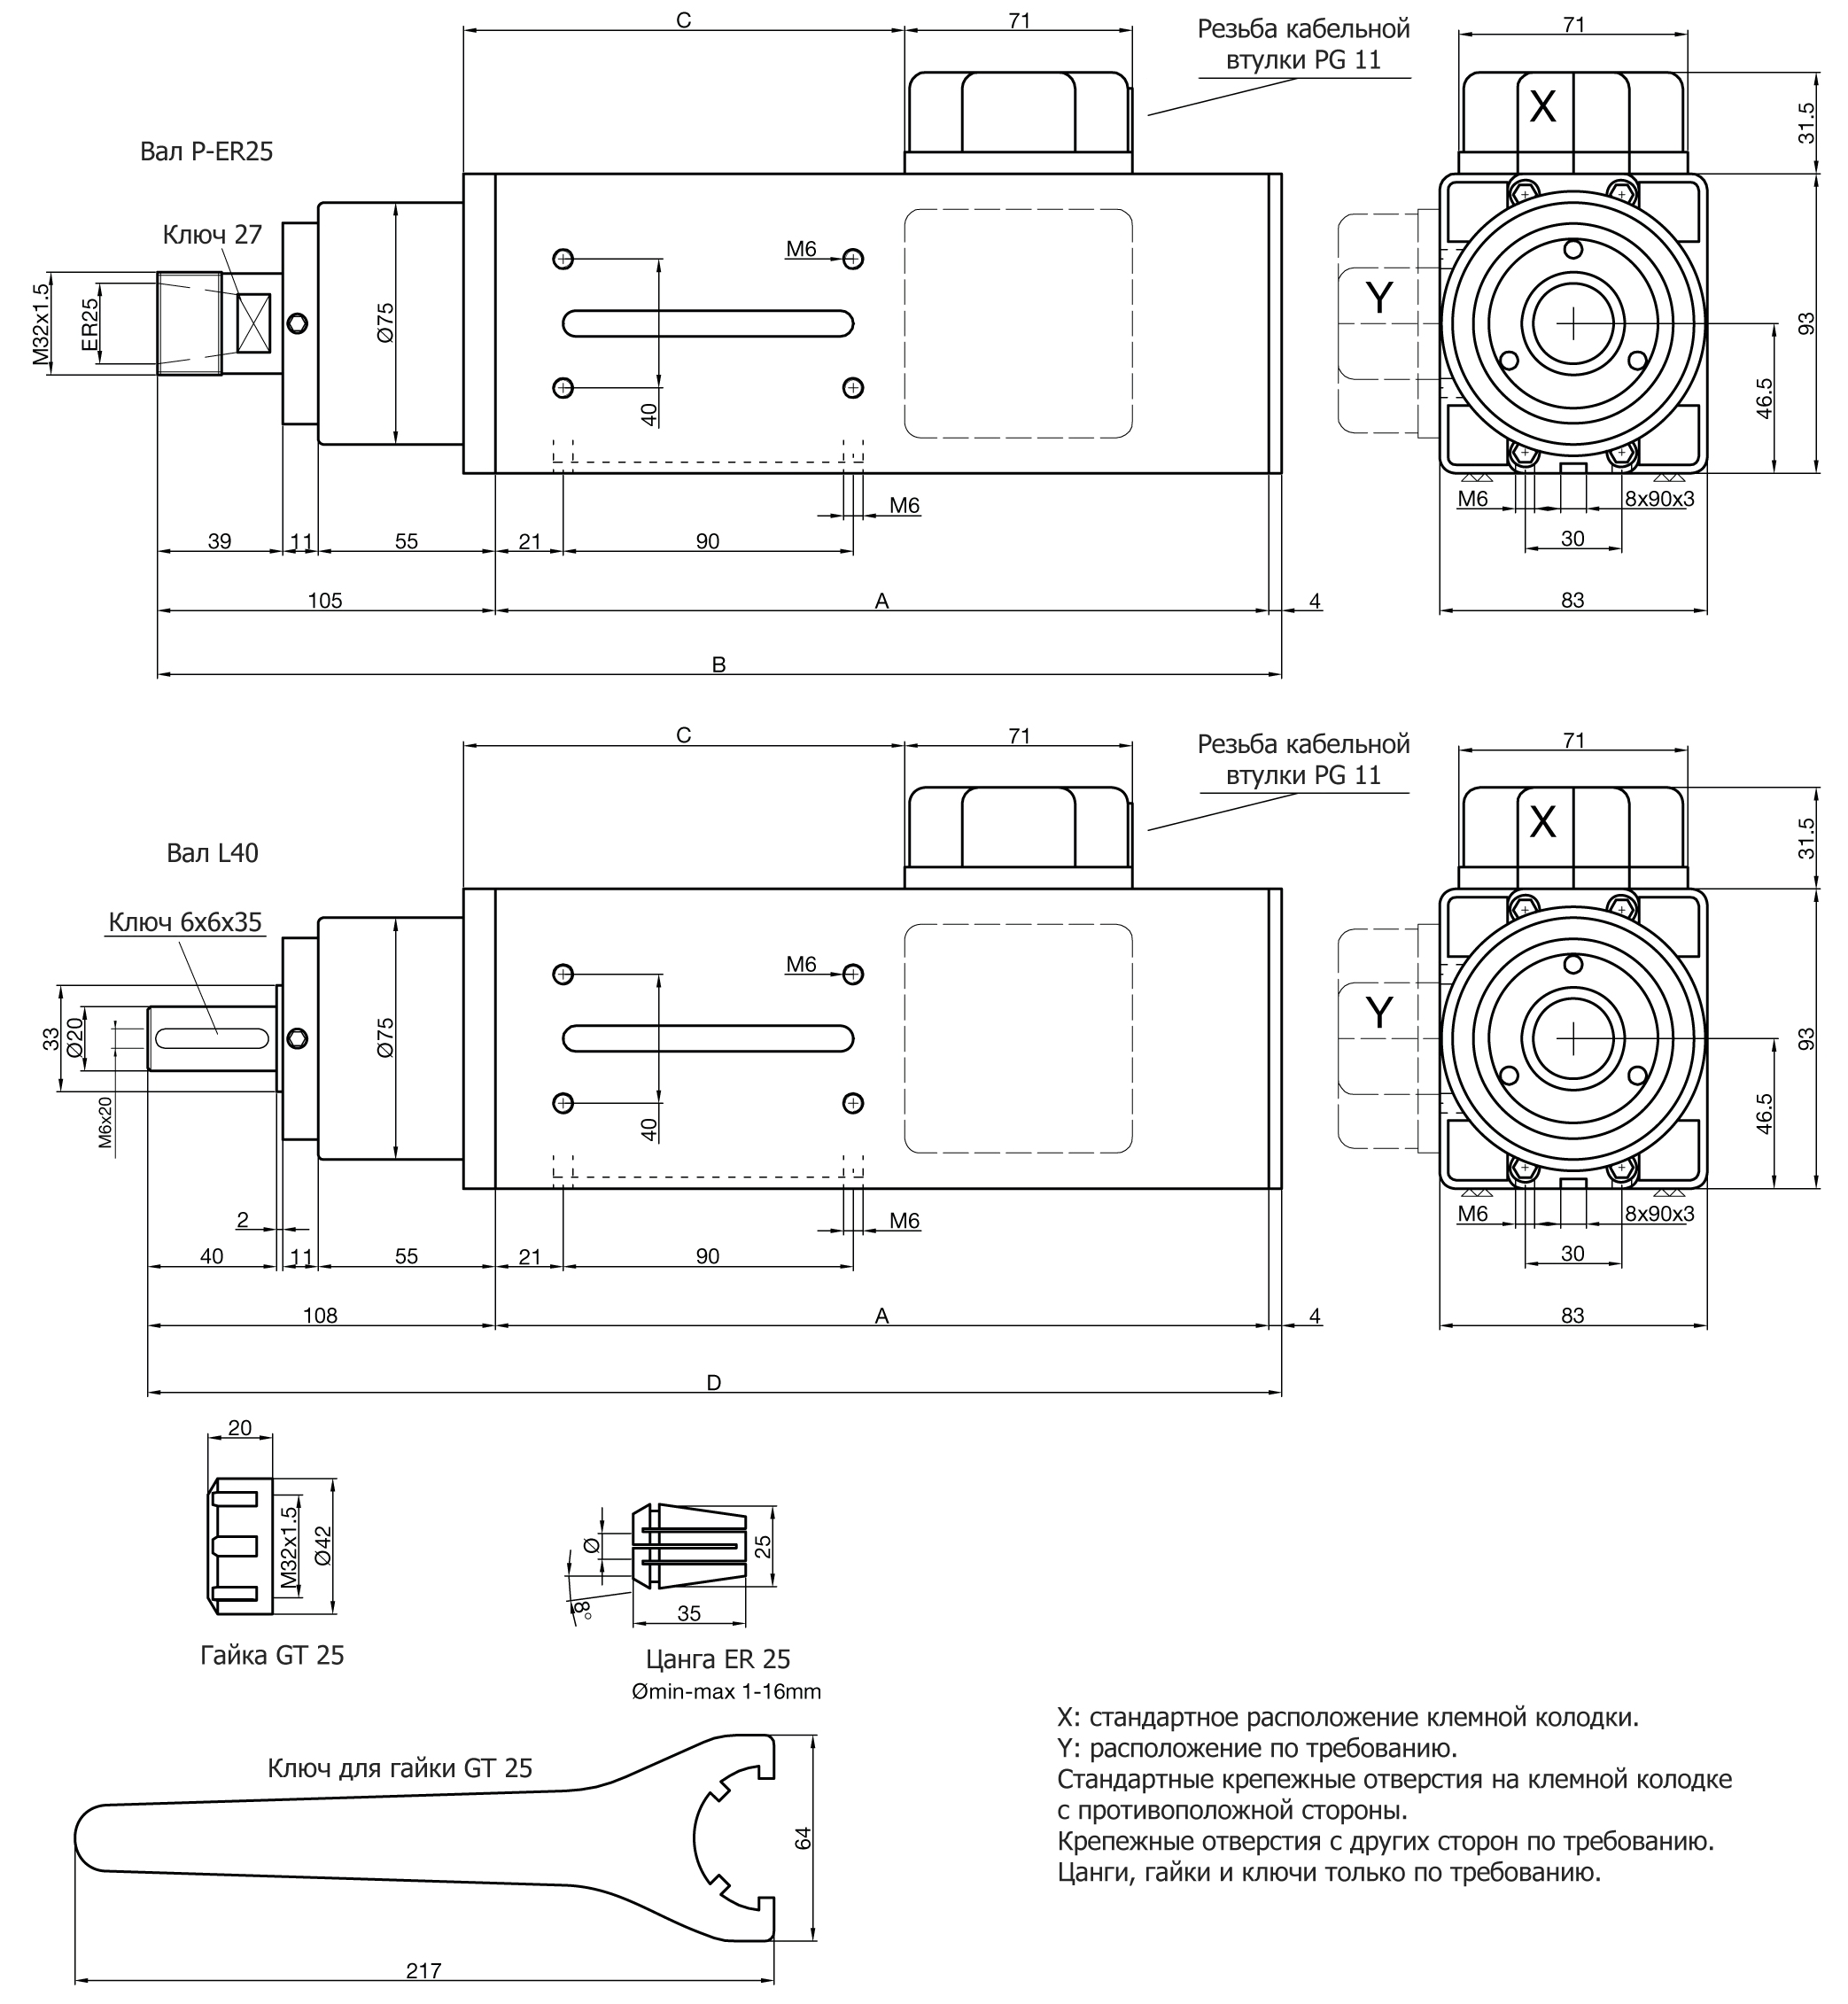 Электрошпиндель Teknomotor серии C41-47, фото 3